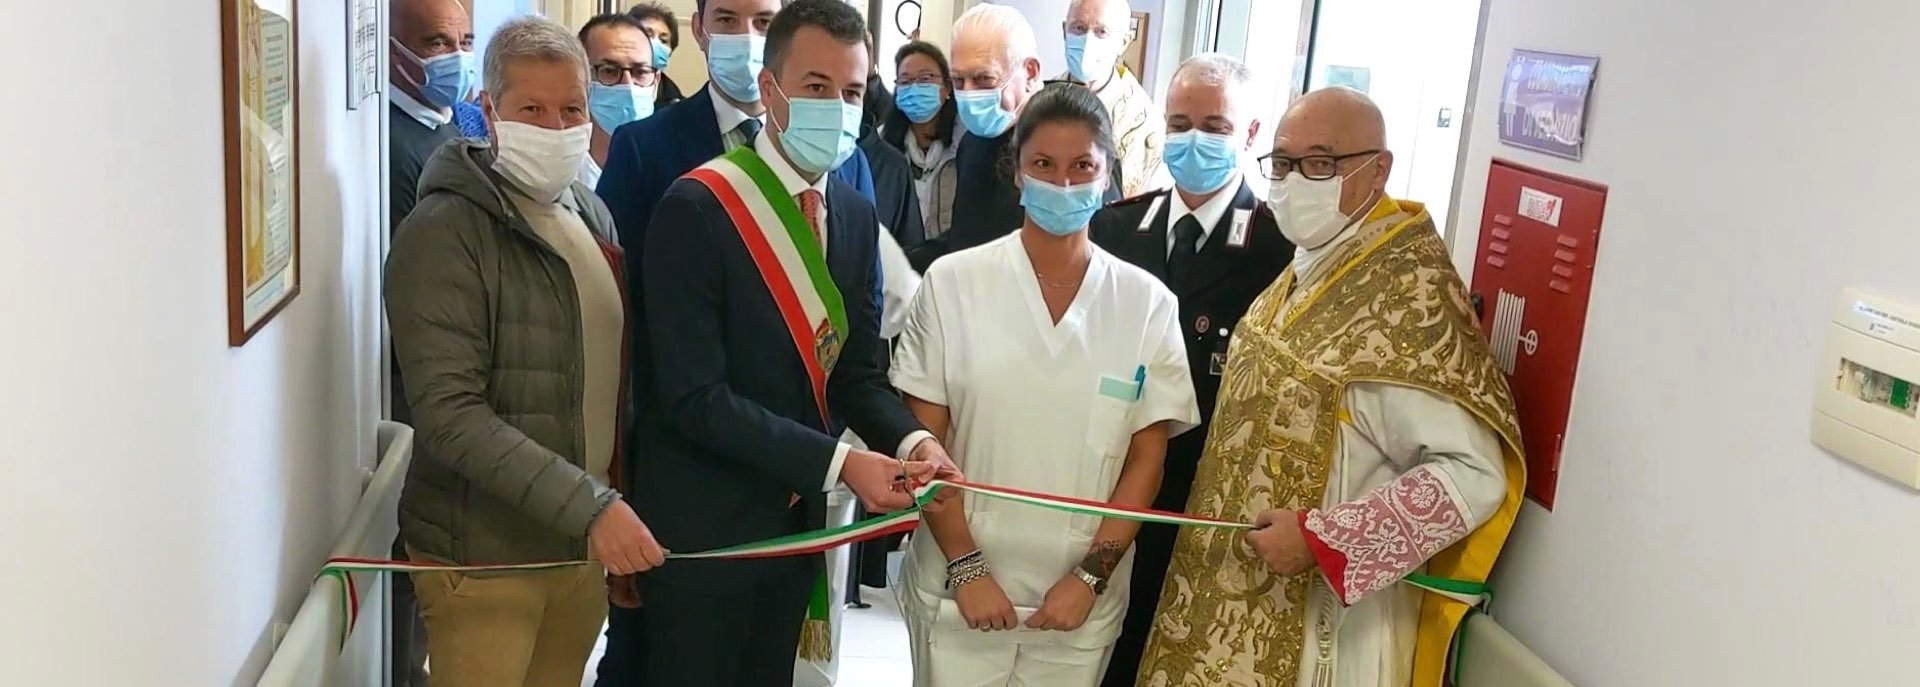 L'inaugurazione dell'Ospedale di Comunità, un tassello di valore nella Sanità territoriale 